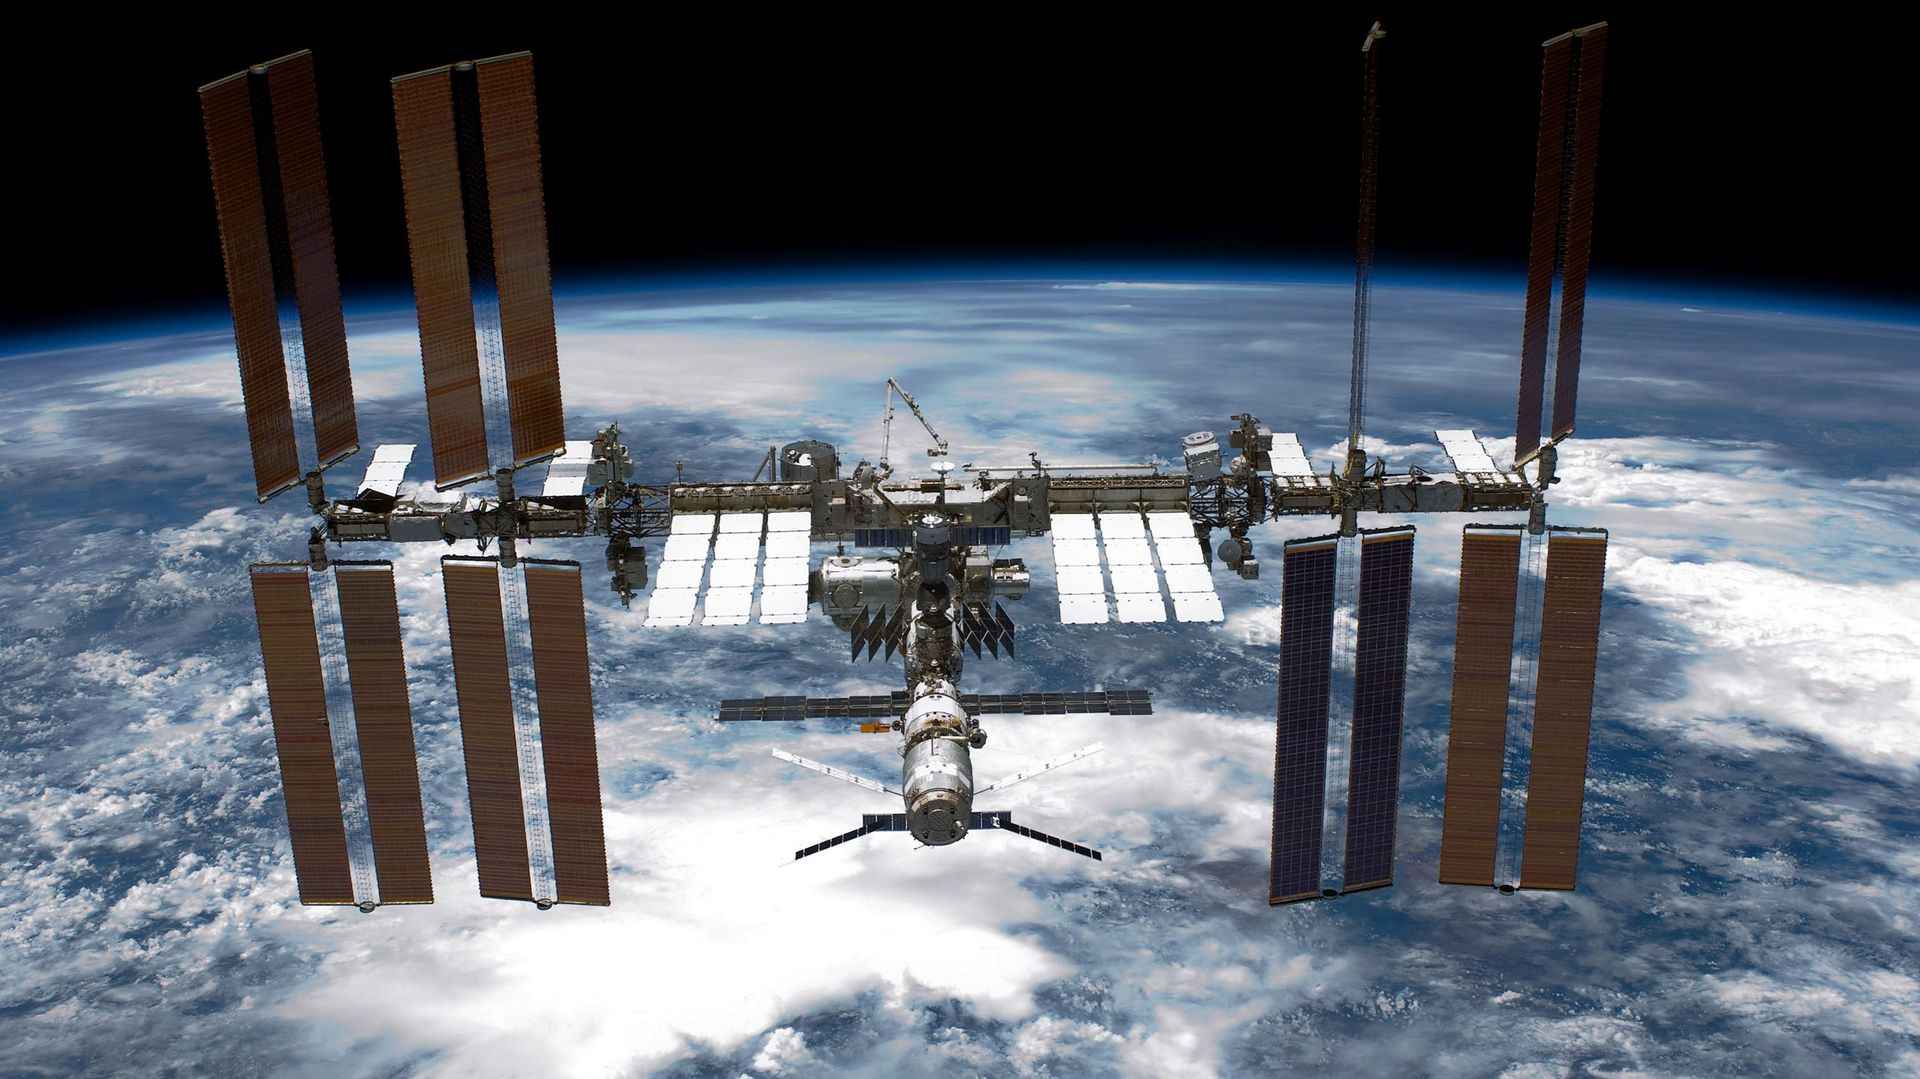 La Station Spatiale Internationale (ISS) en orbite autour de la Terre